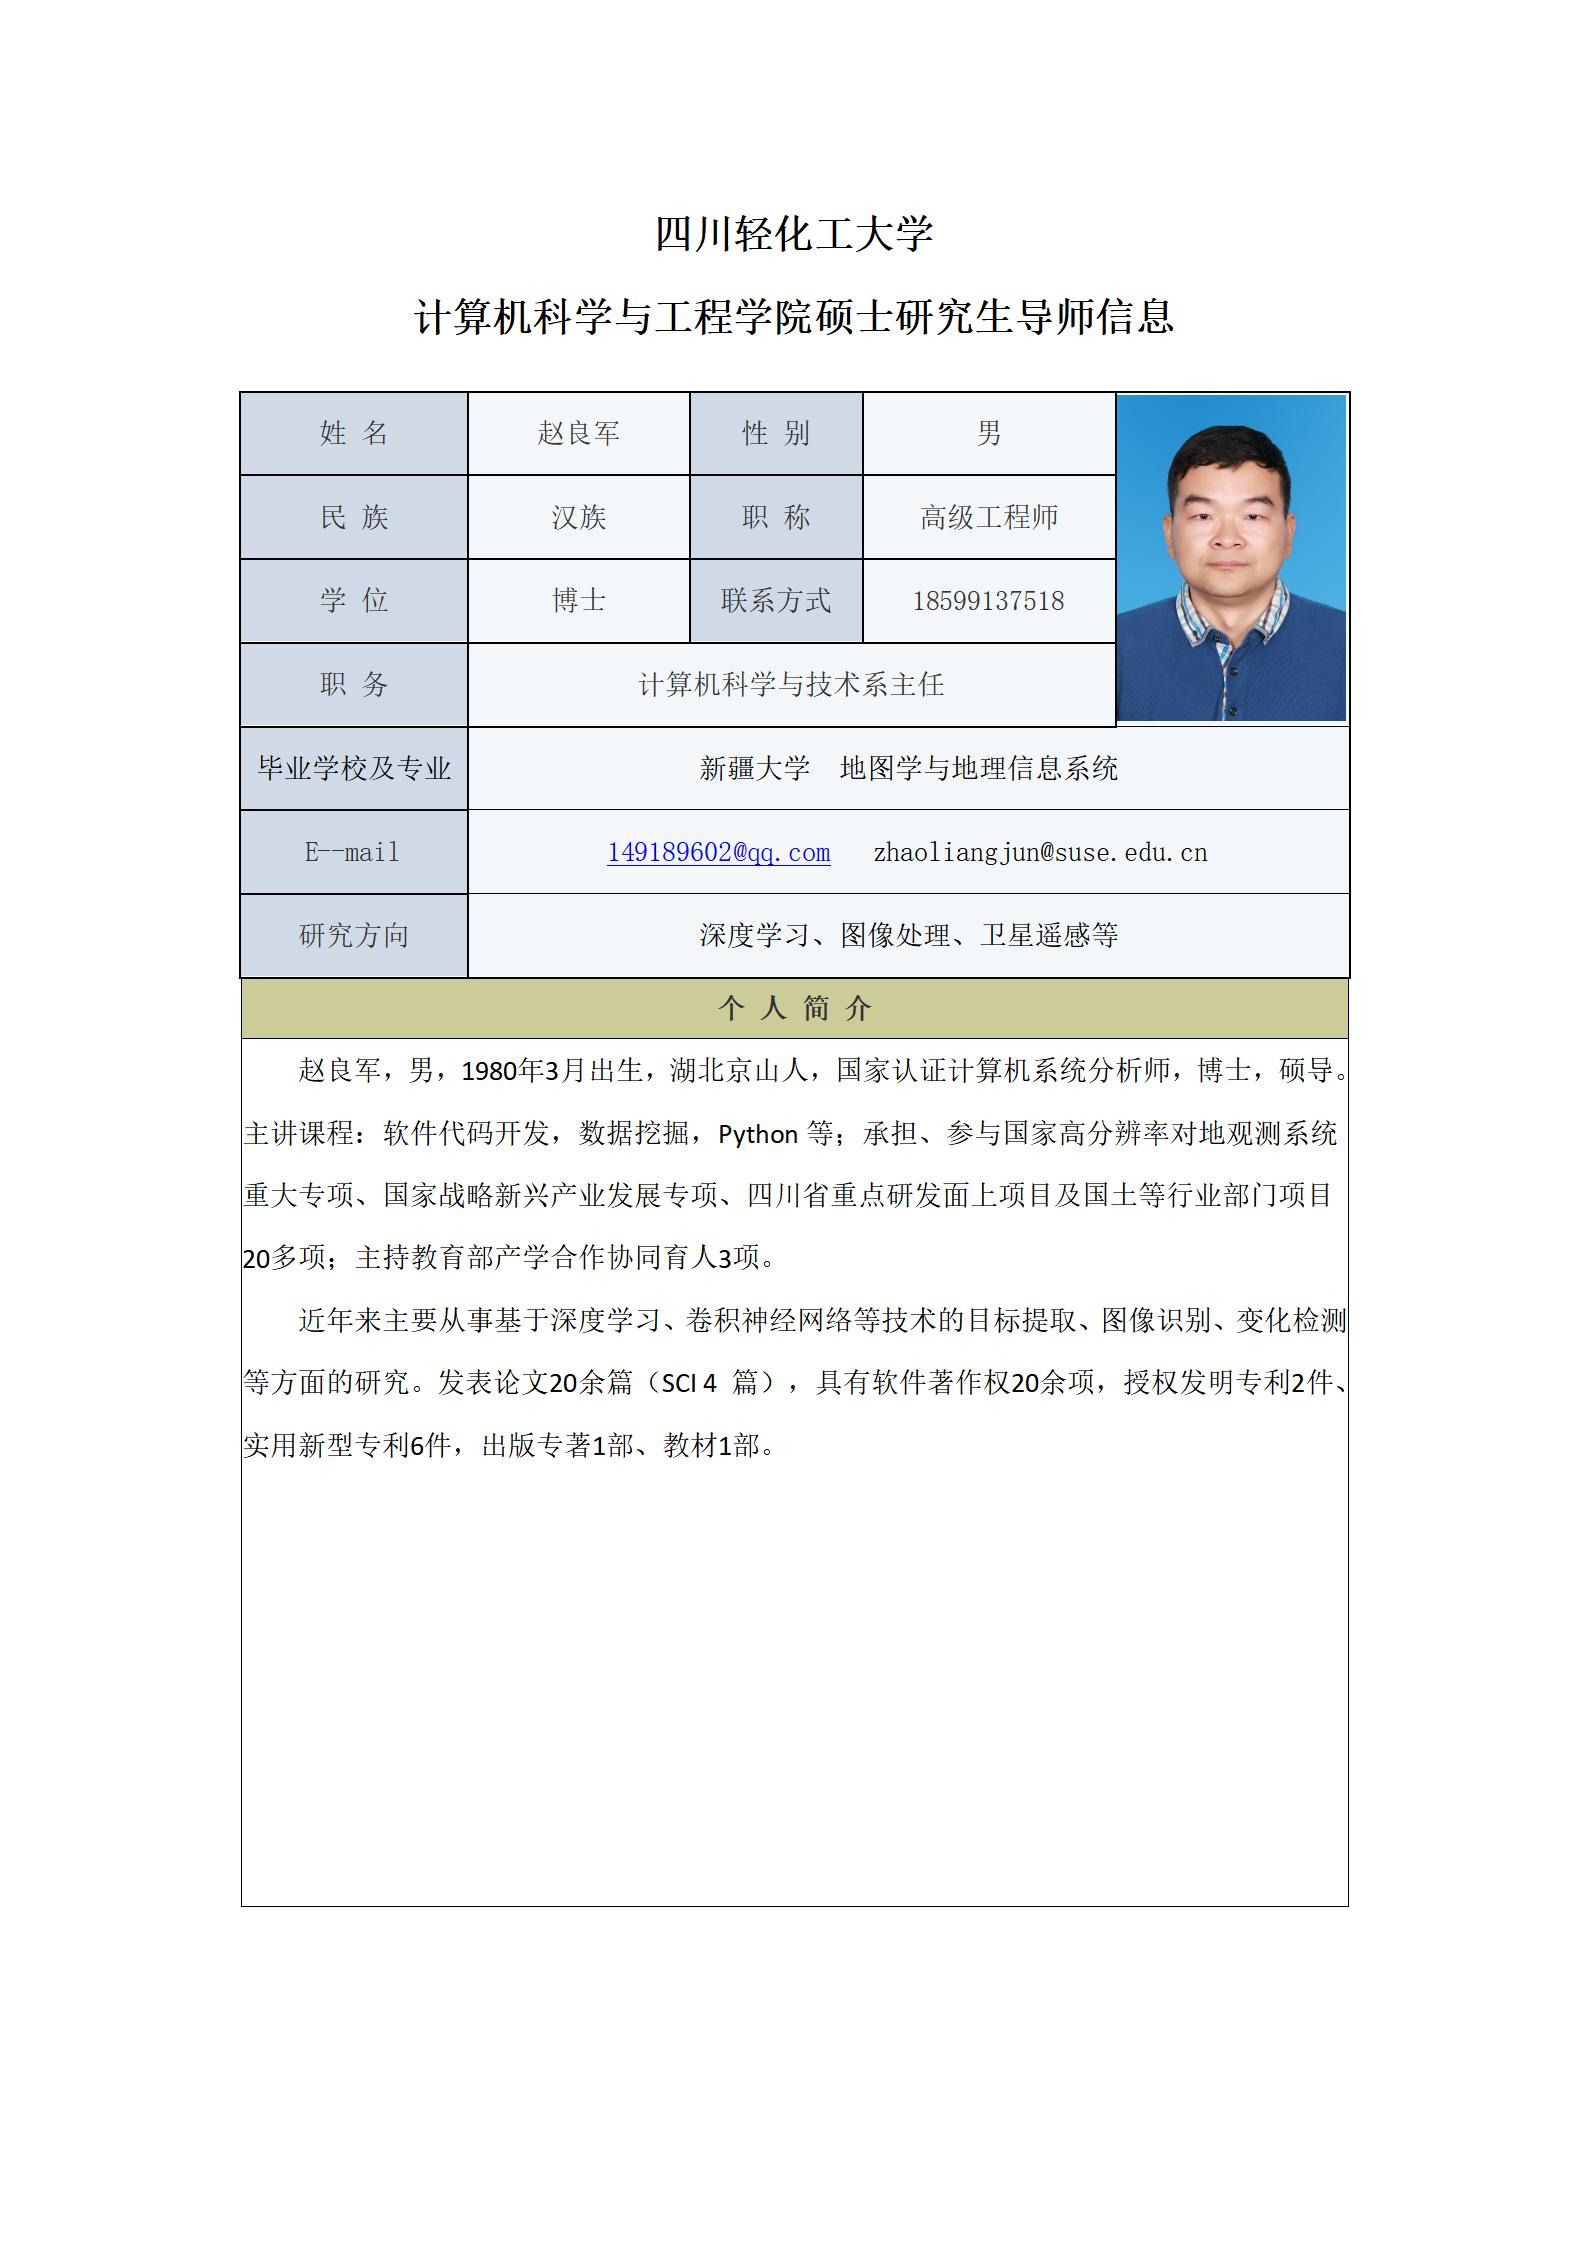 赵良军-2023计算机科学与工程学院硕士生导师信息表（网站）_01.jpg